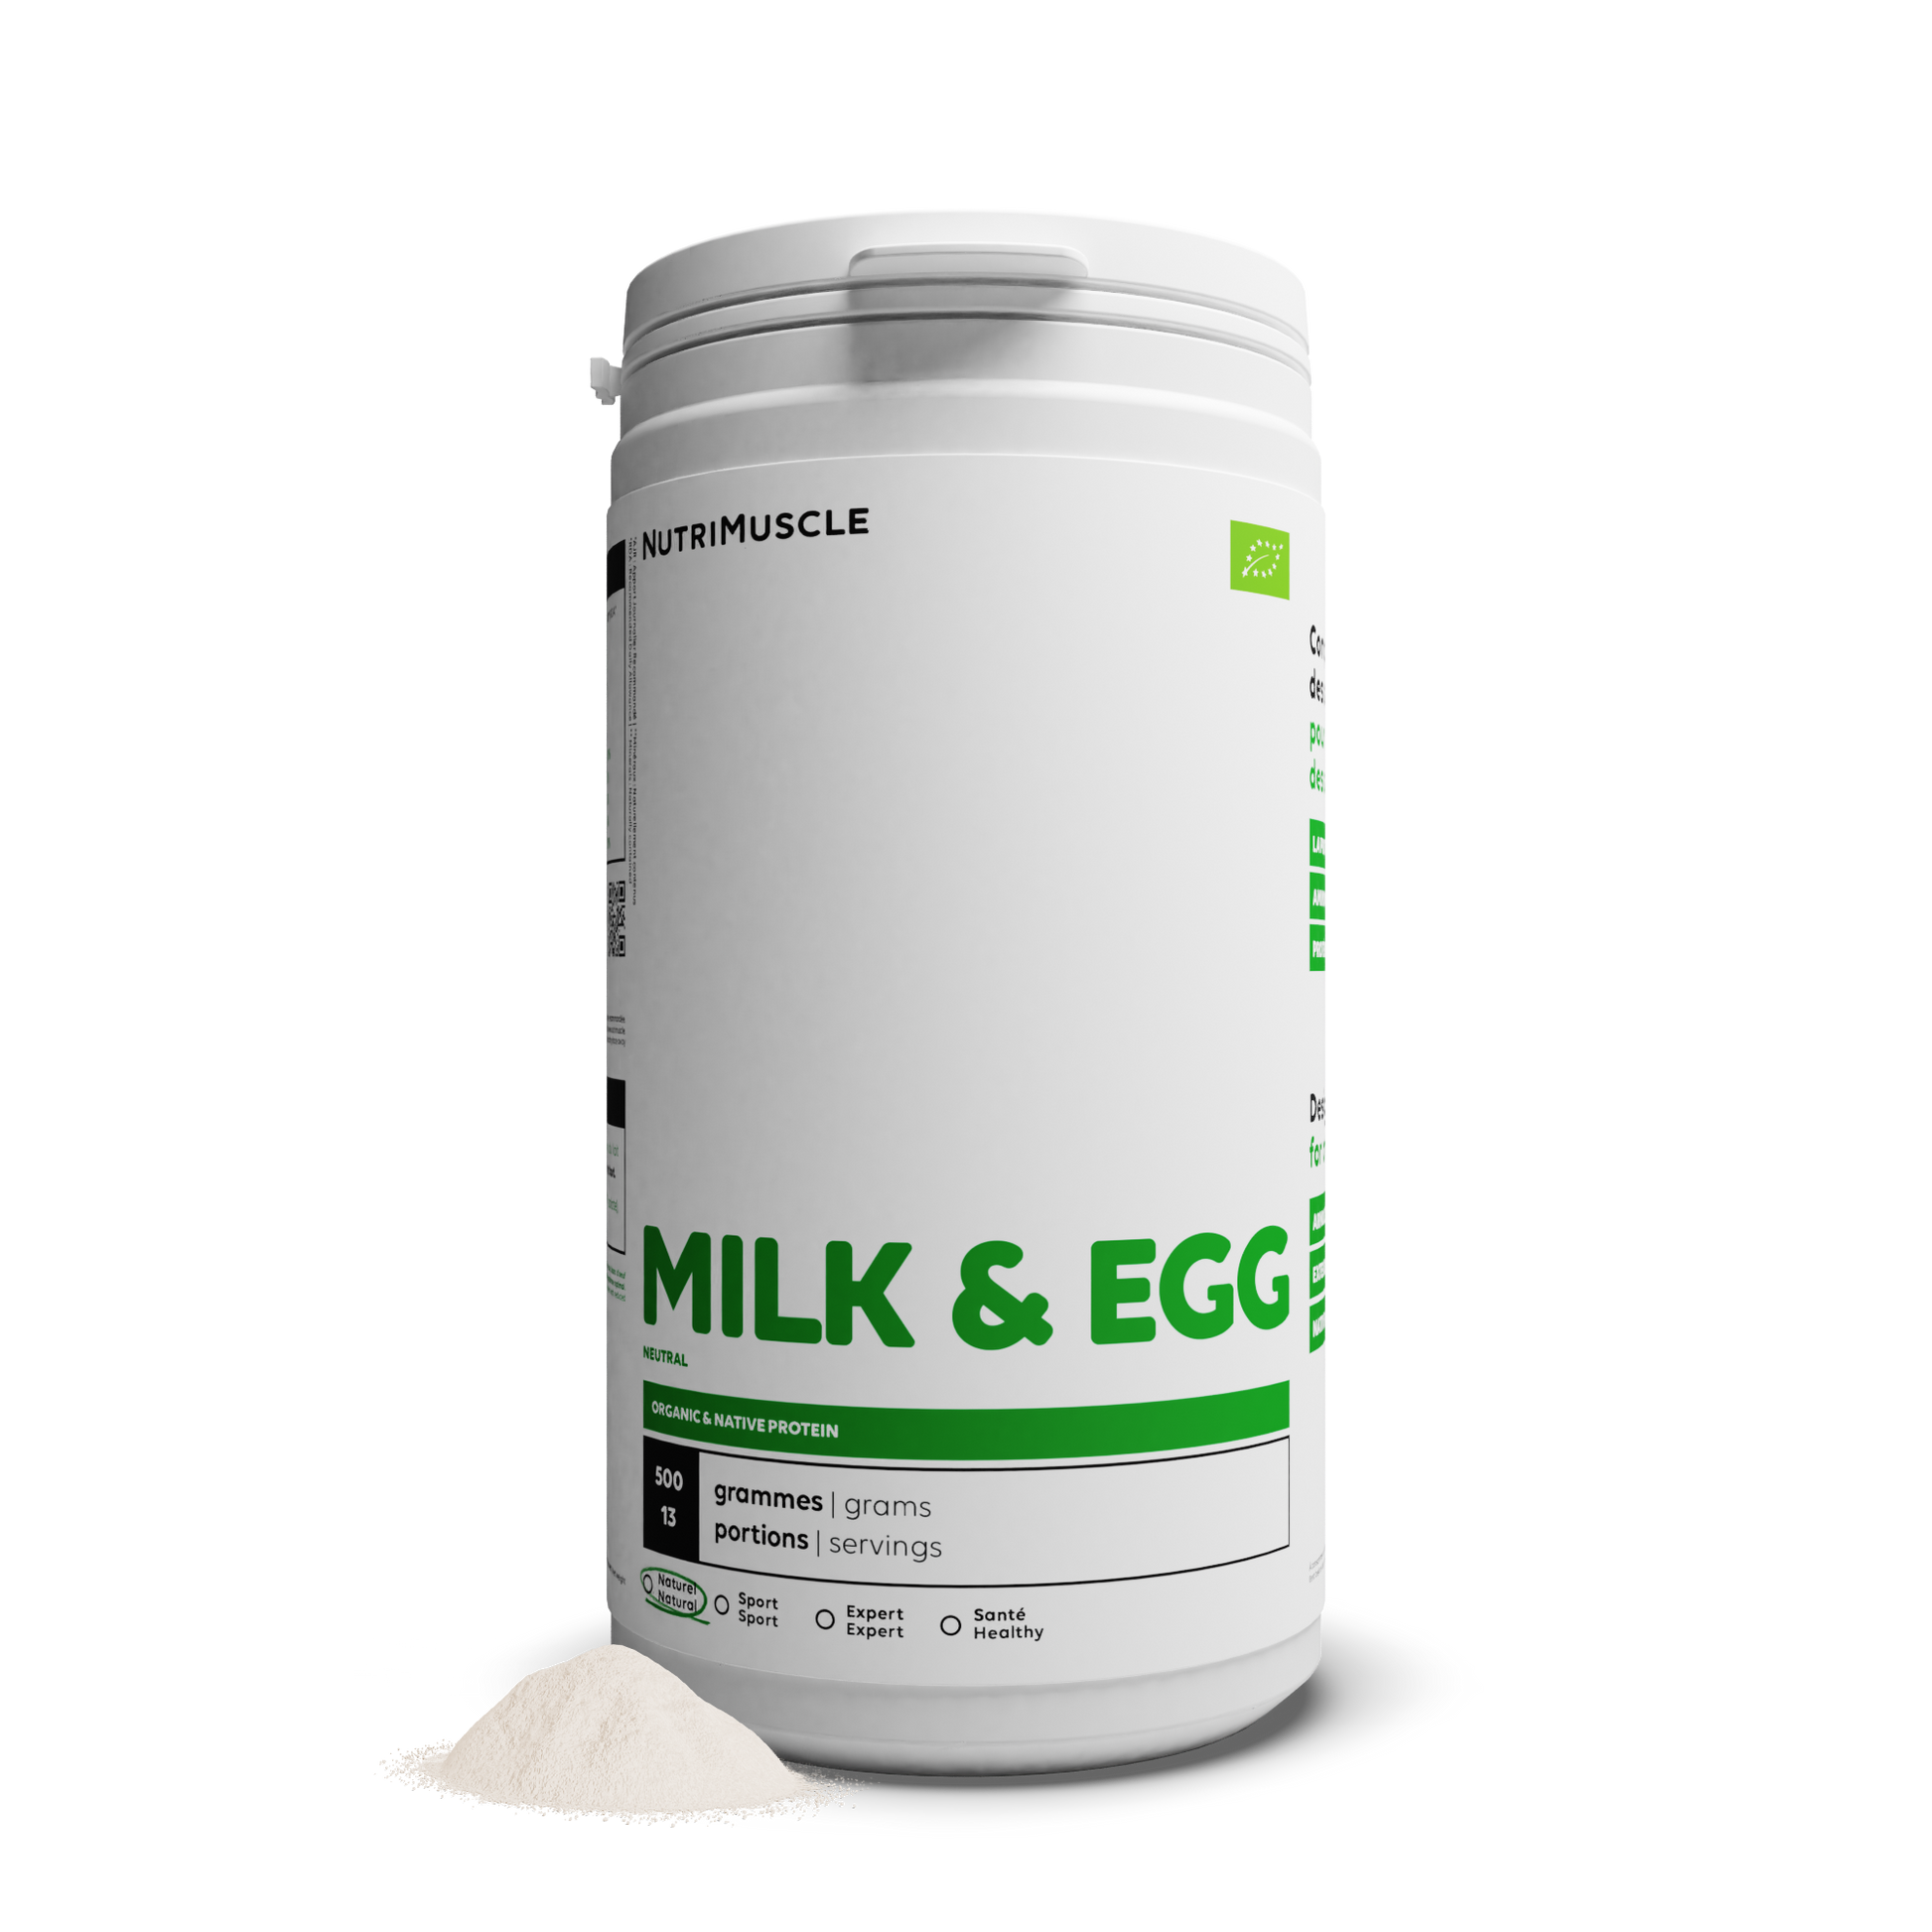 Milk & Egg Biologique